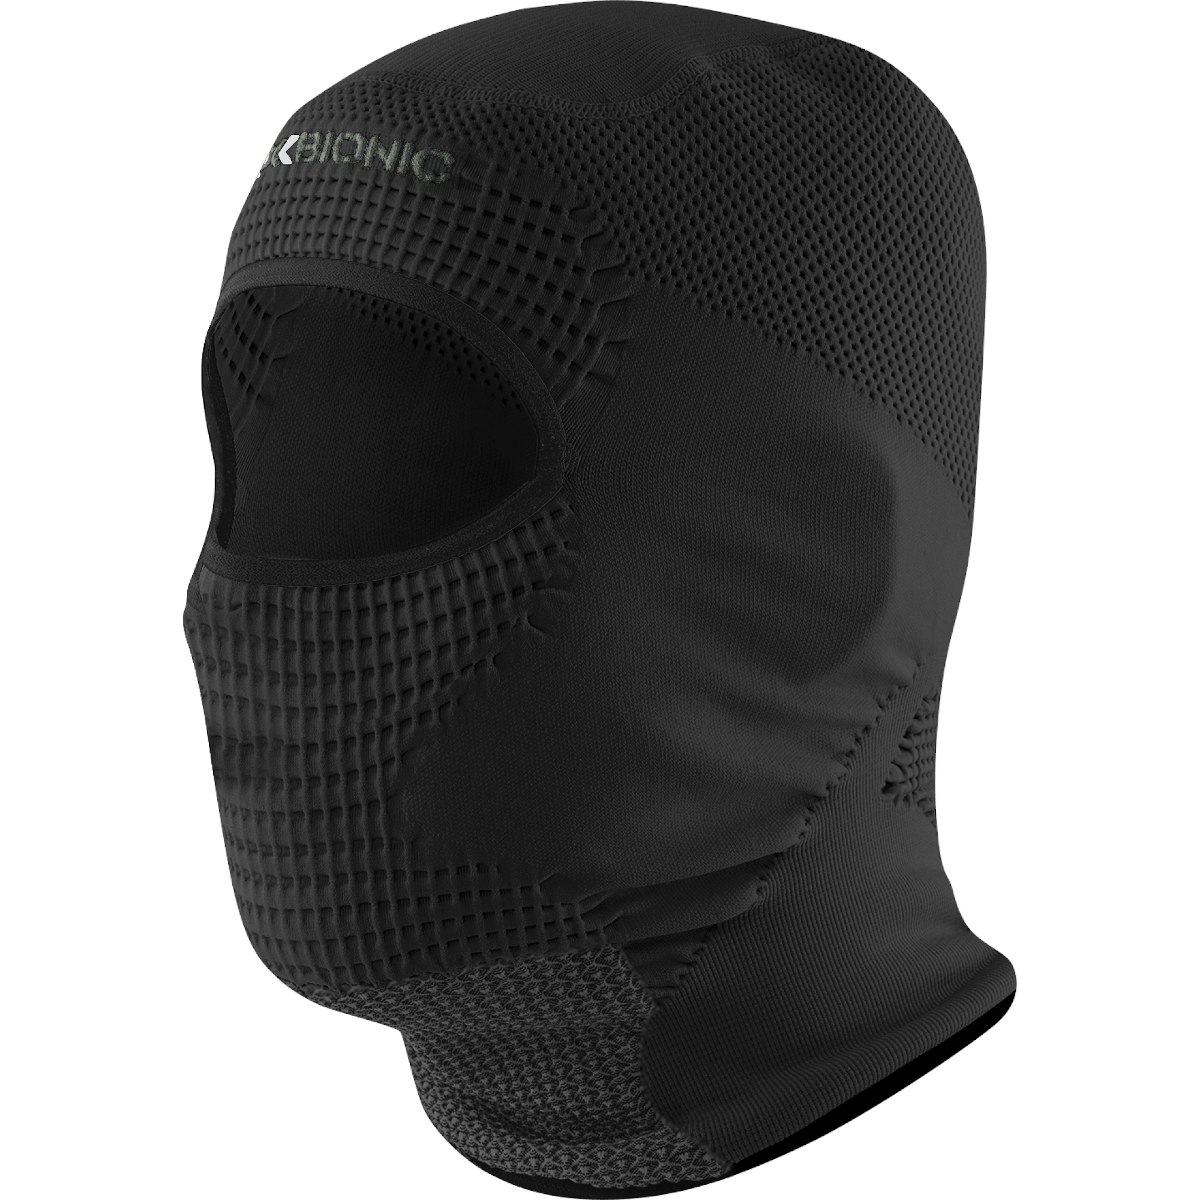 Produktbild von X-Bionic Stormcap Eye 4.0 Gesichtsmaske - black/charcoal